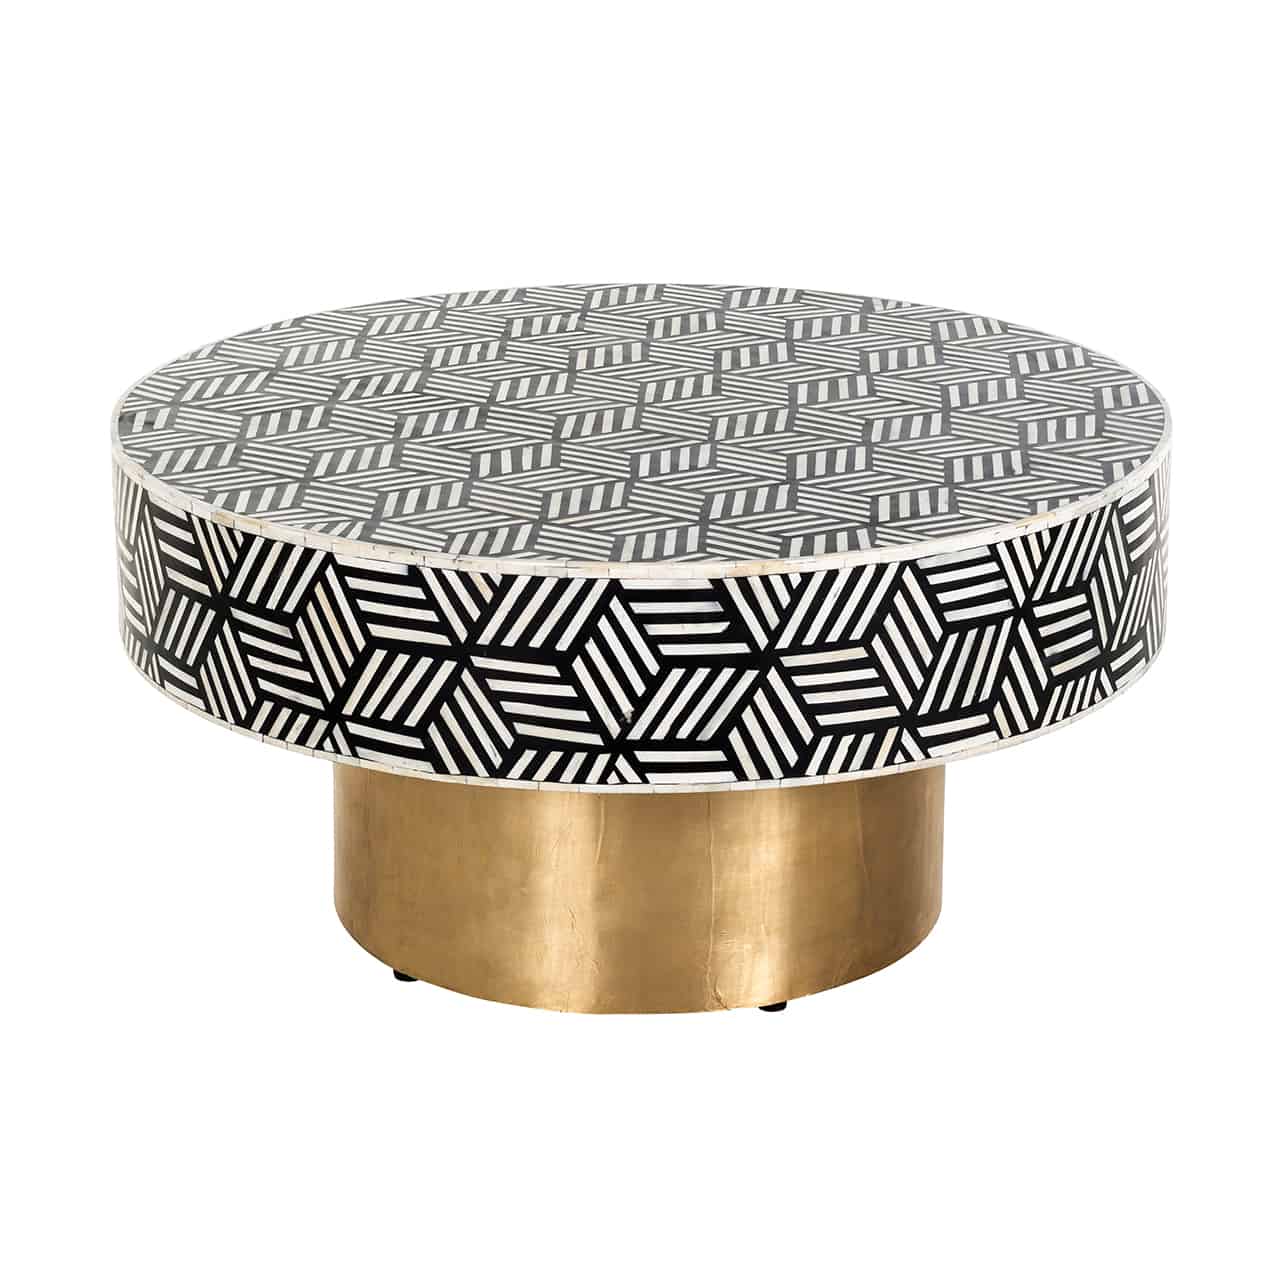 Couchtisch; auf einem trommelförmigen Sockel in gold liegt eine runde, dicke Tischplatte im schwarz-weißem Würfelmuster auf.